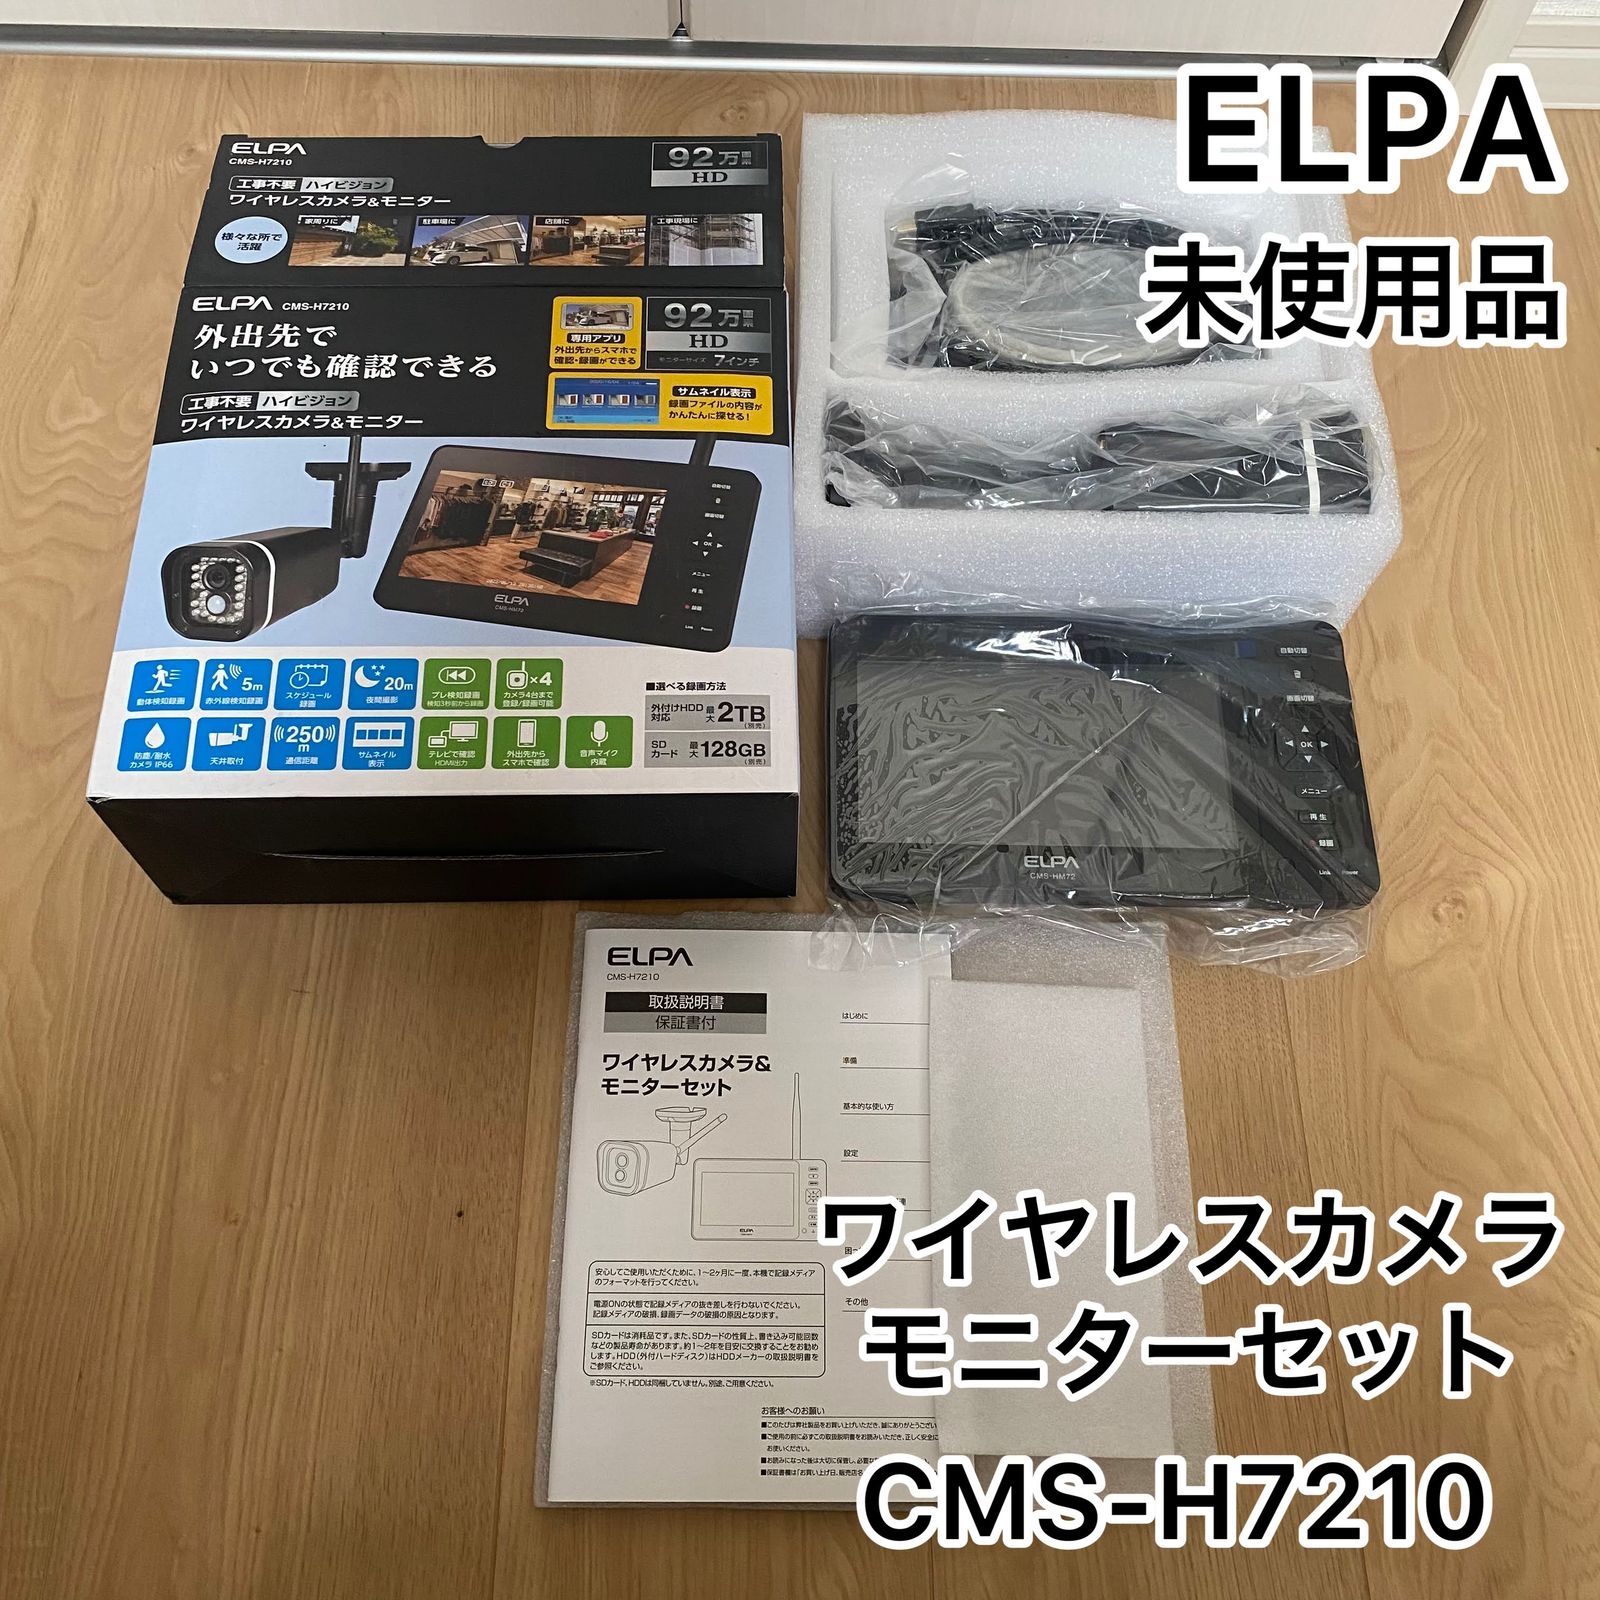 ELPA CMS-H7210 ワイヤレスカメラ\u0026モニター - 防犯カメラ